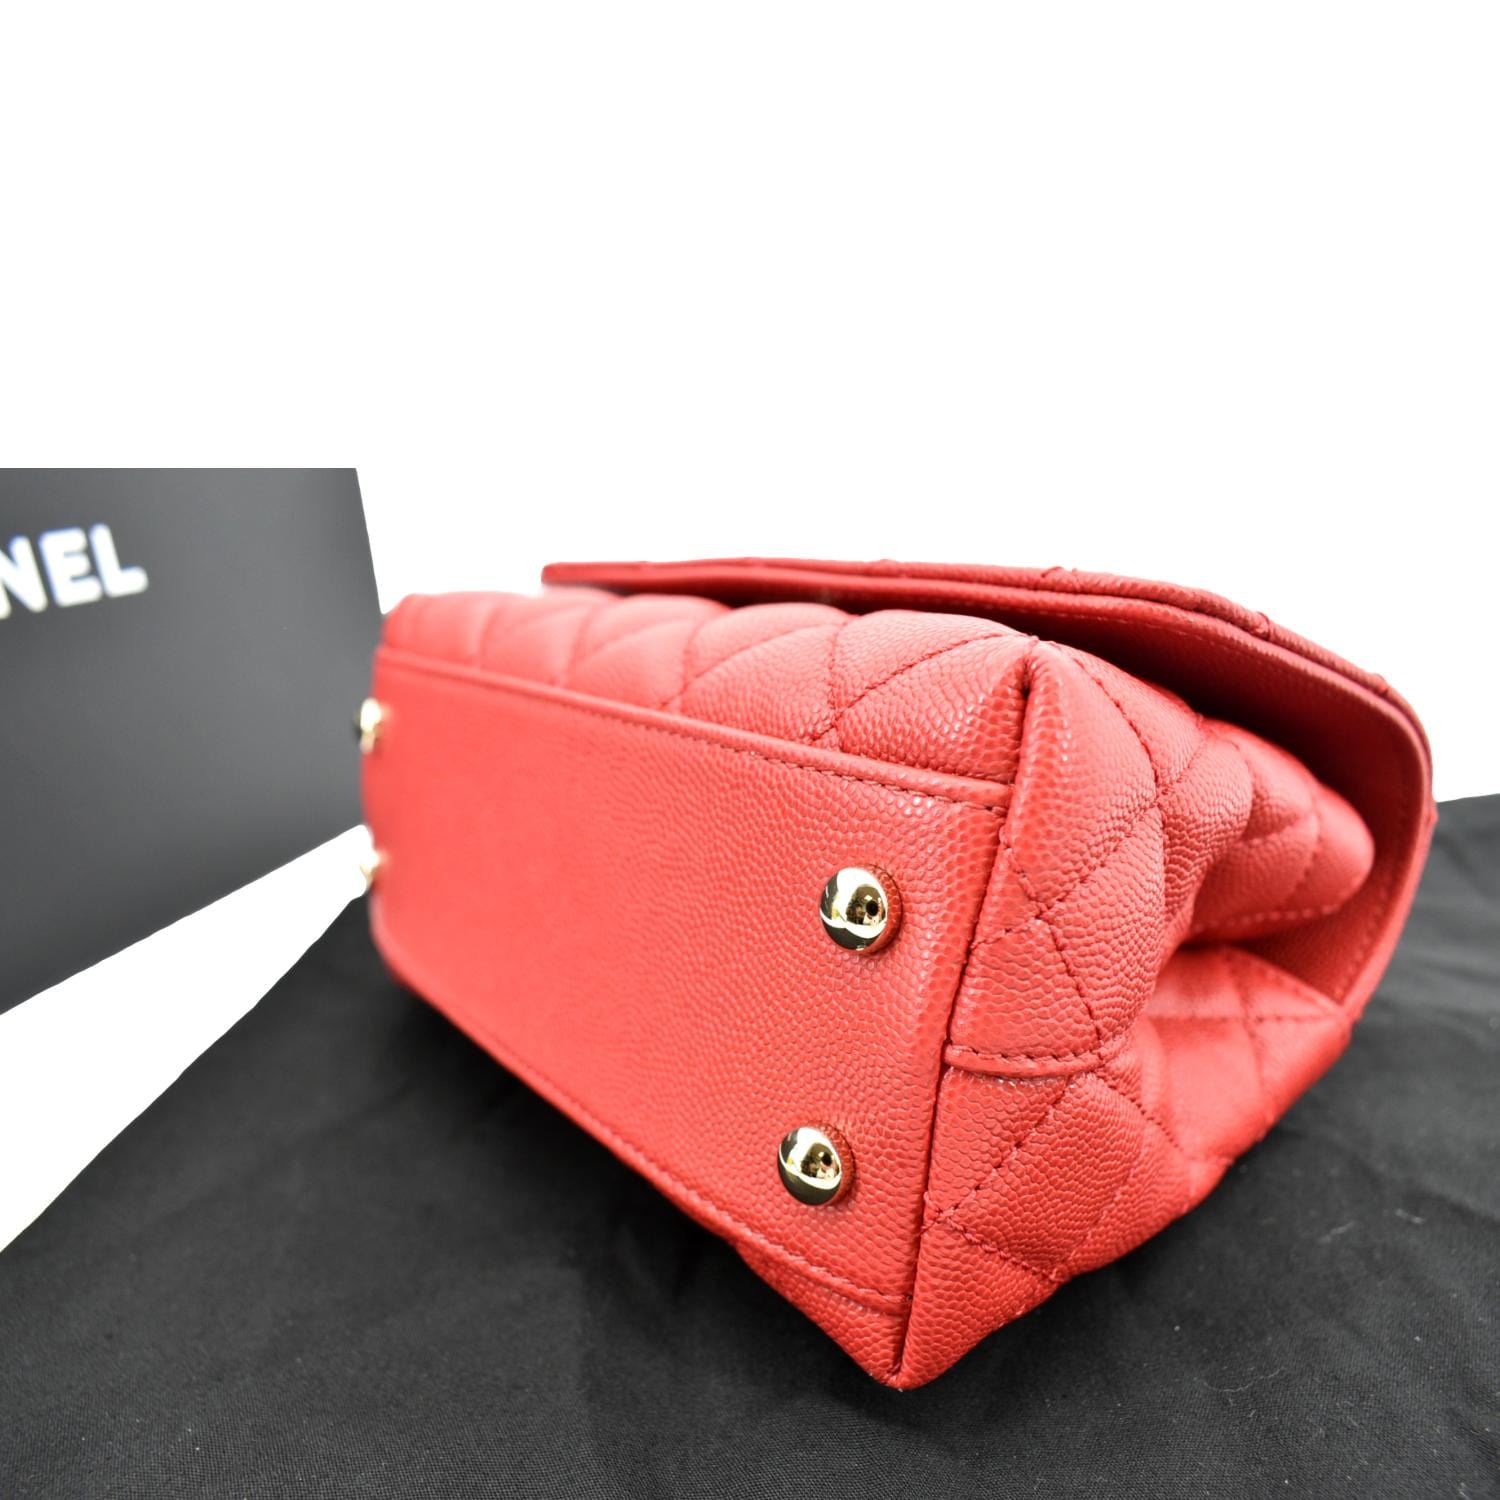 coco chanel red purse